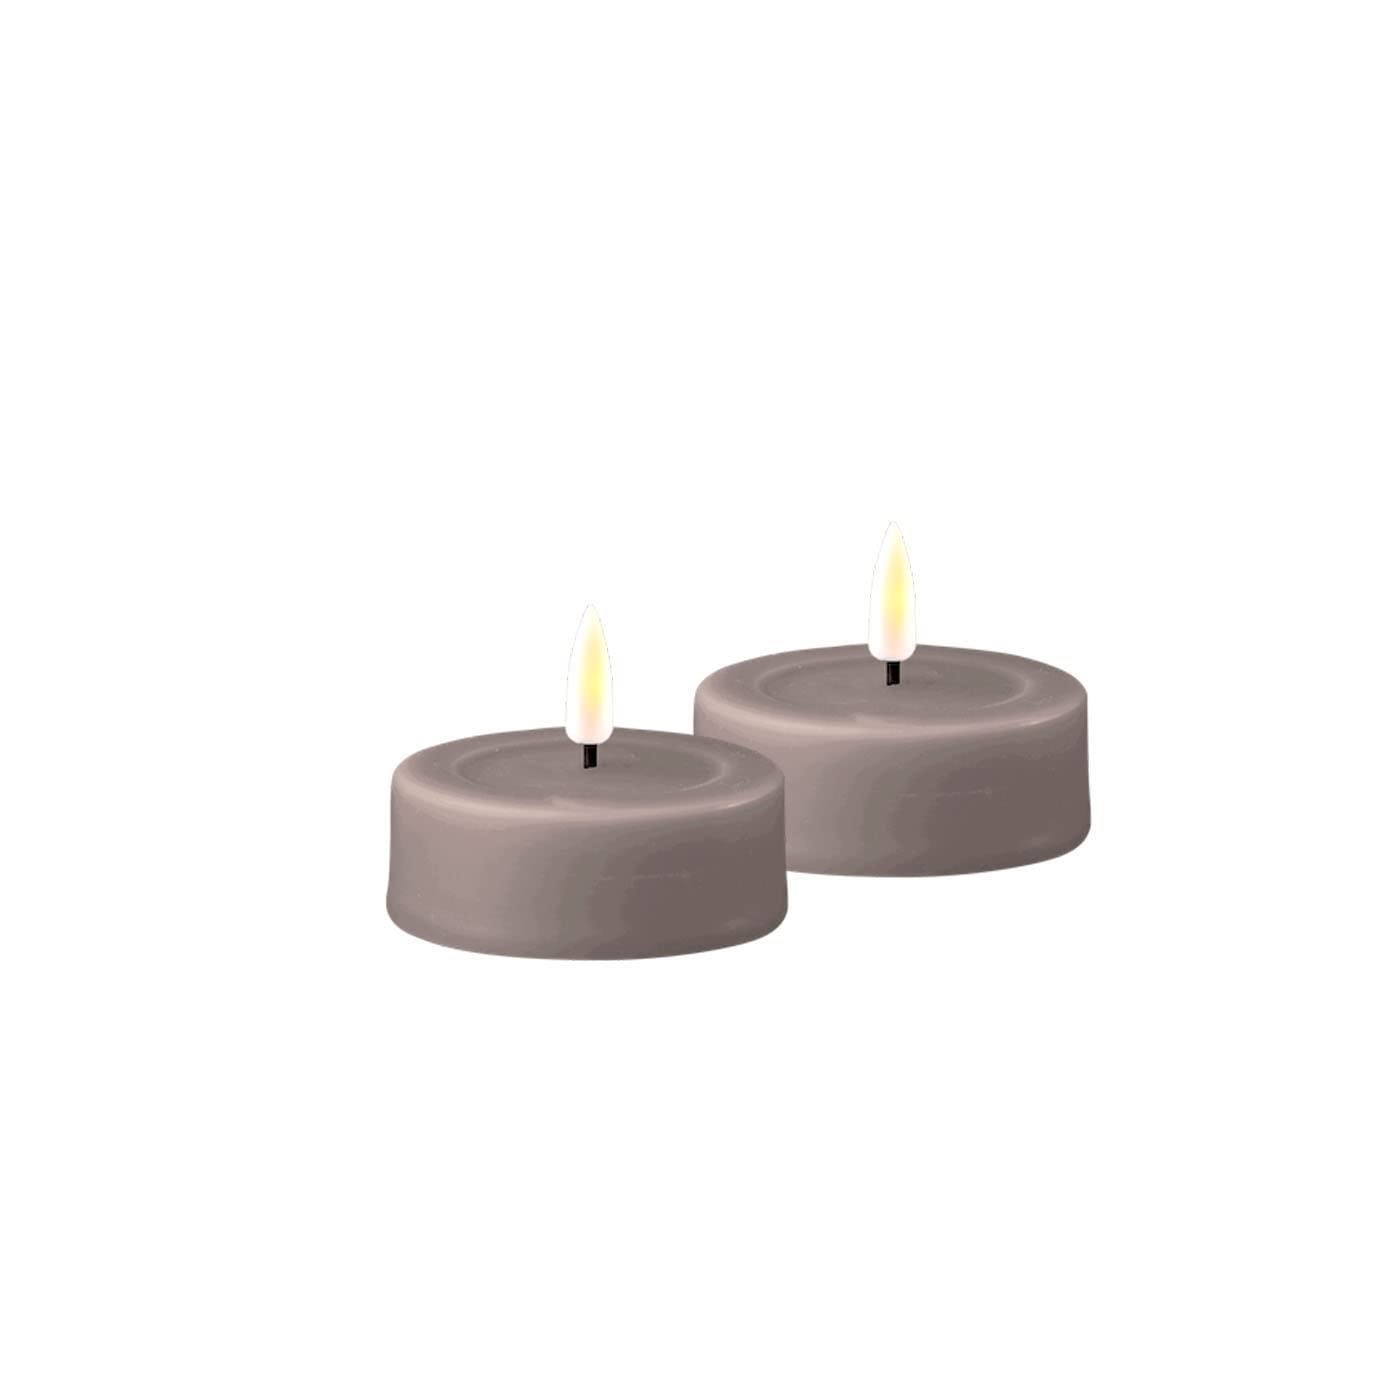 ReWu LED Kerze Deluxe Homeart, Indoor LED-Kerze mit realistischer Flamme auf einem Echtwachsspiegel, warmweißes Licht - Grau Großes Teelicht